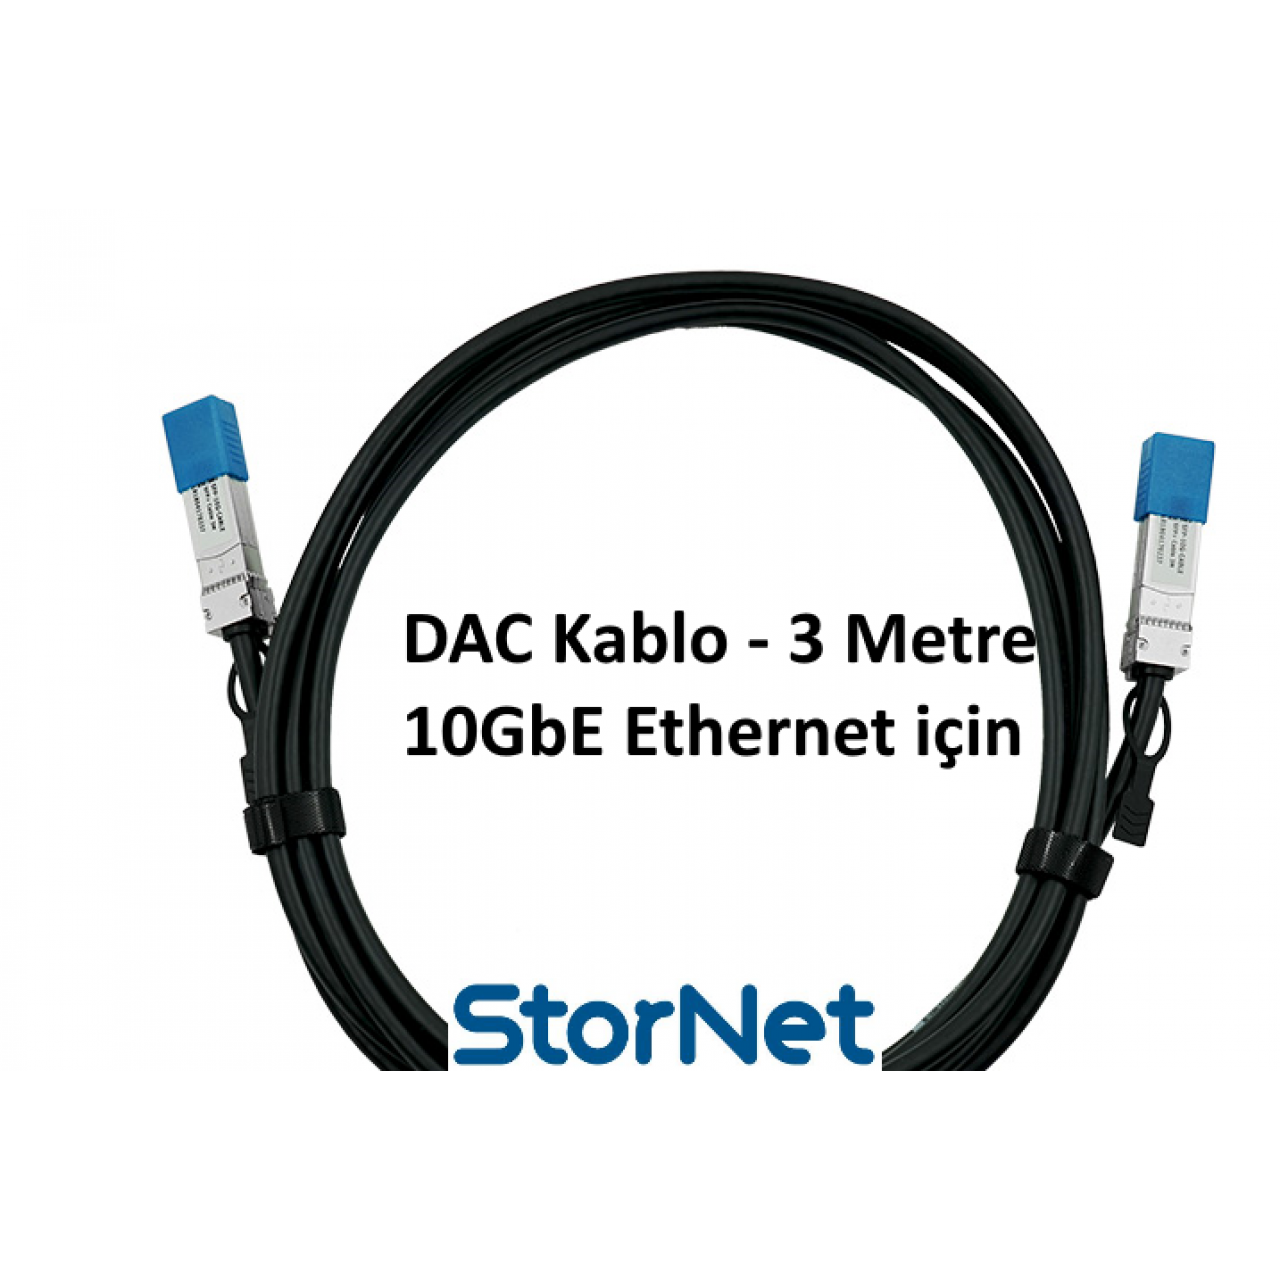 Dac Kablo 3 Metre for Cisco Supermicro Dell